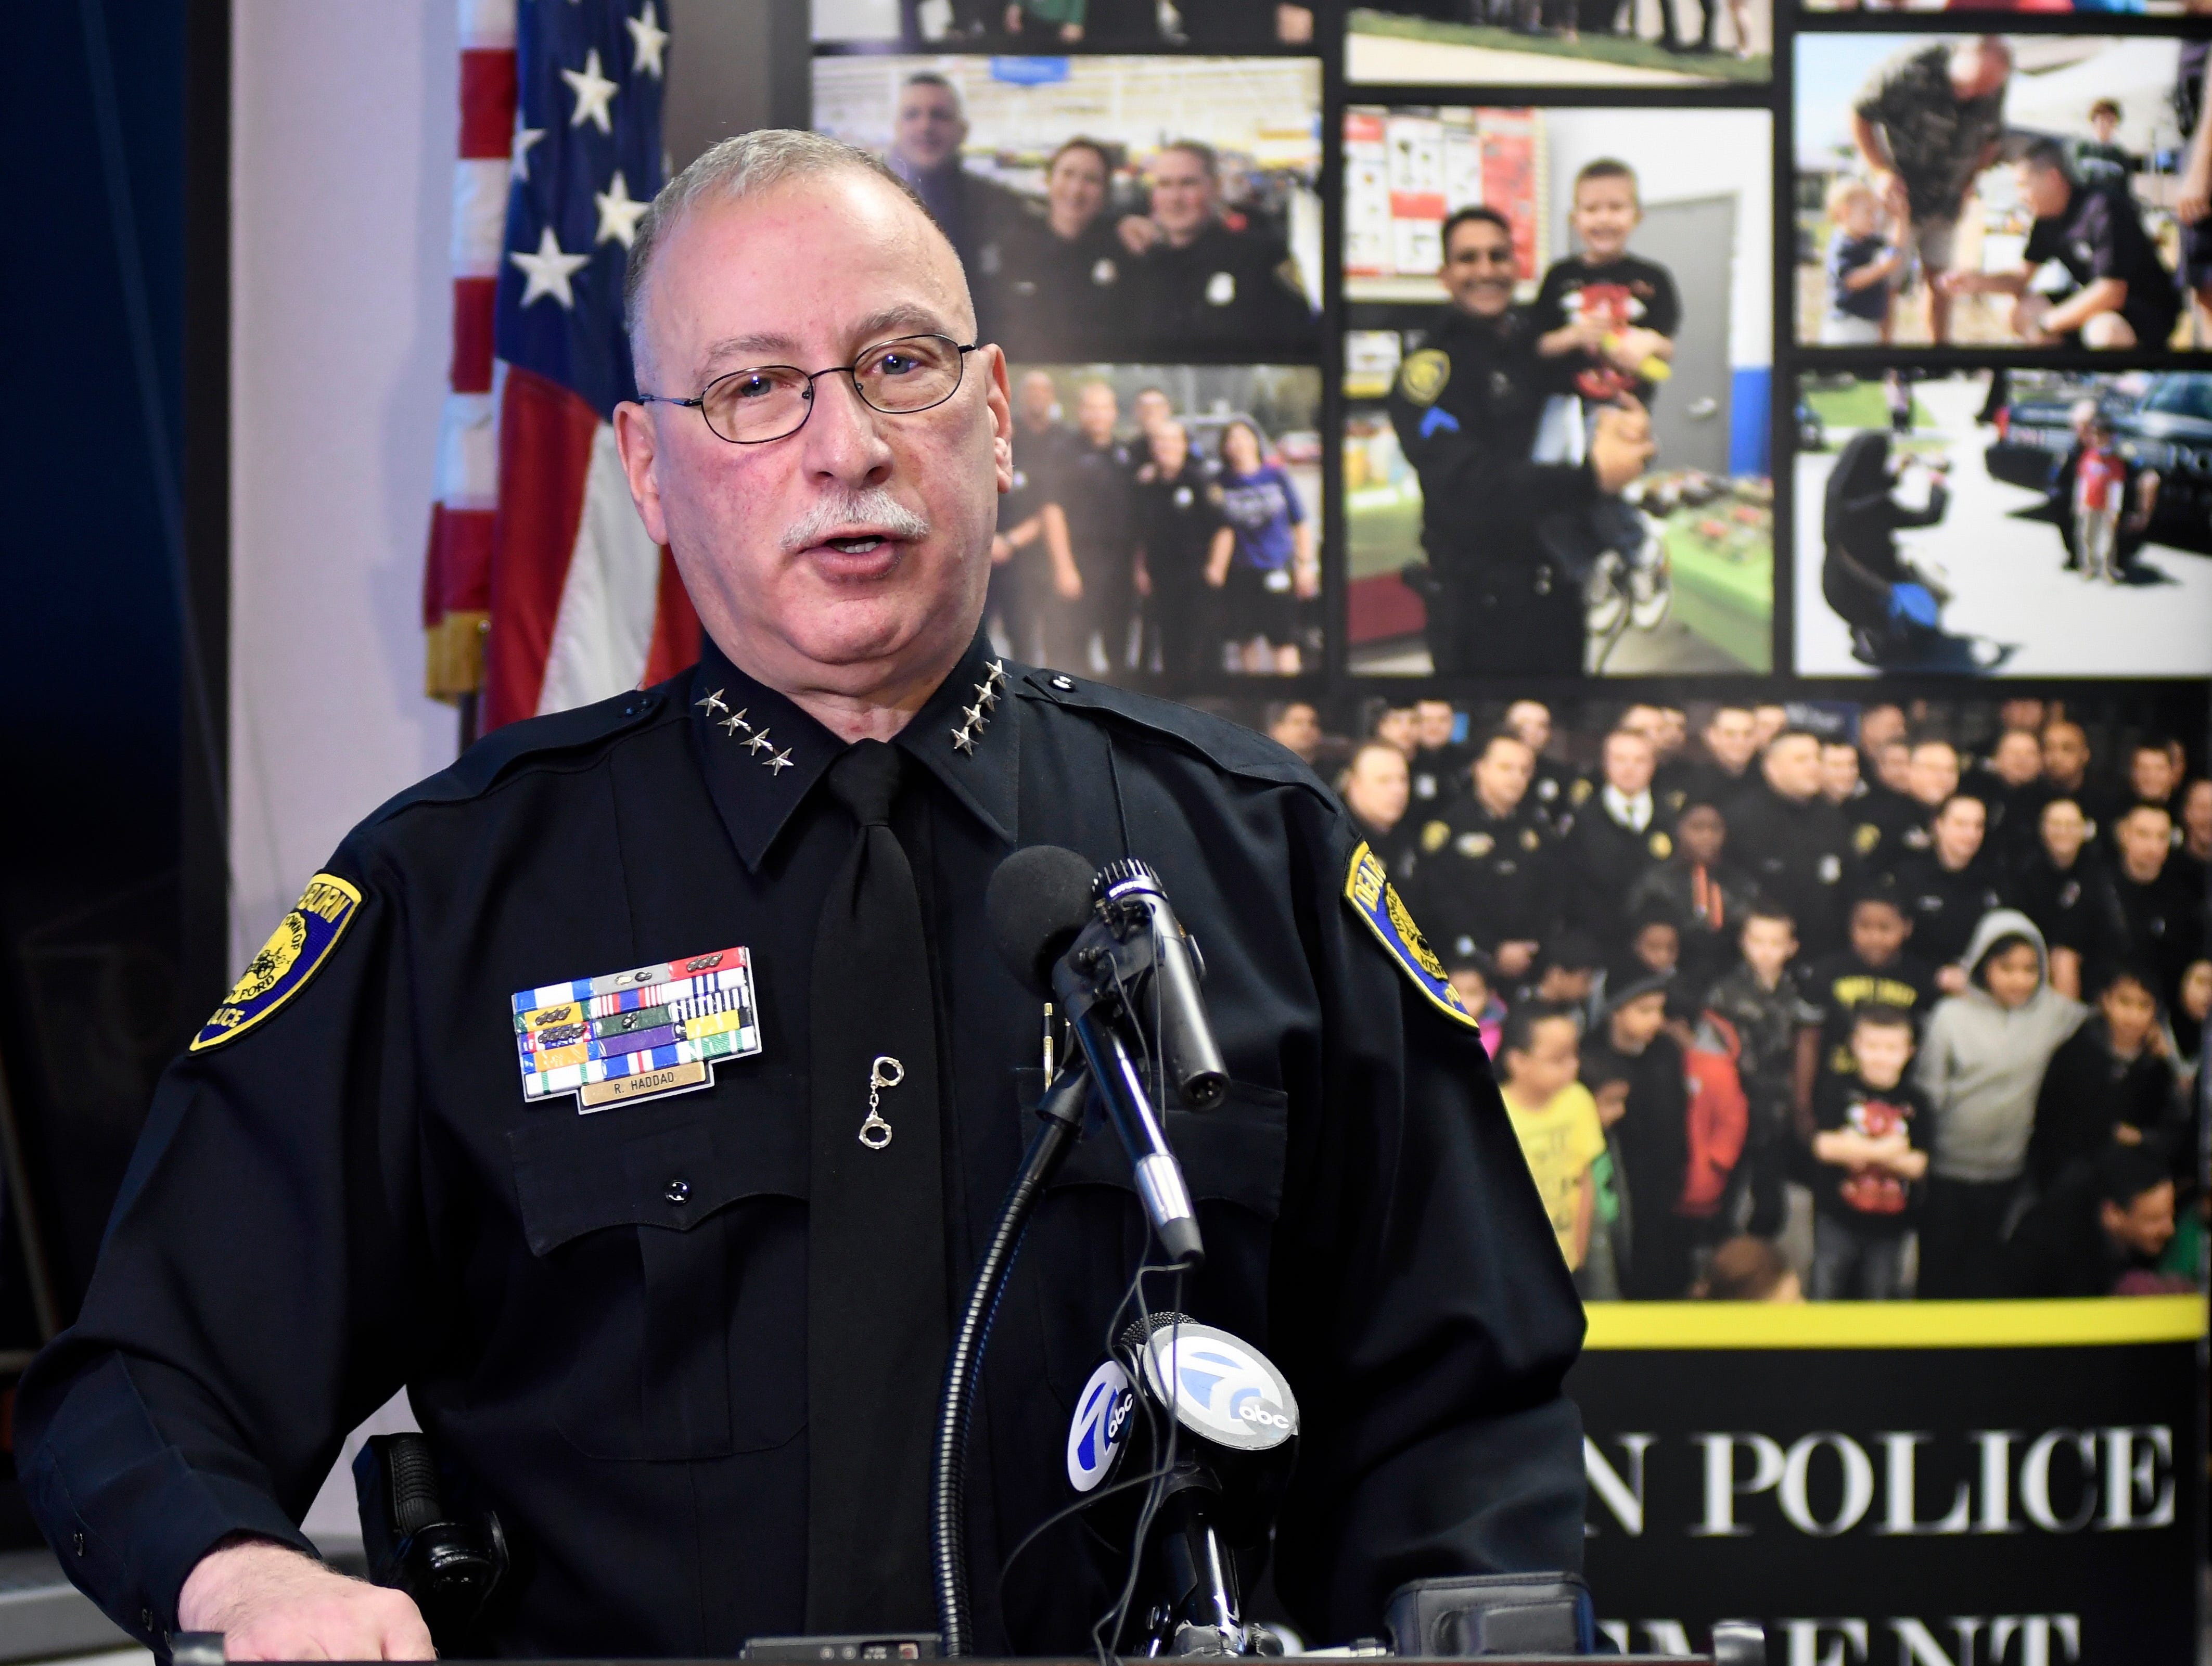 Mantan kepala polisi Dearborn mengatakan FBI tidak memberitahunya tentang pembebasan tersangka teror